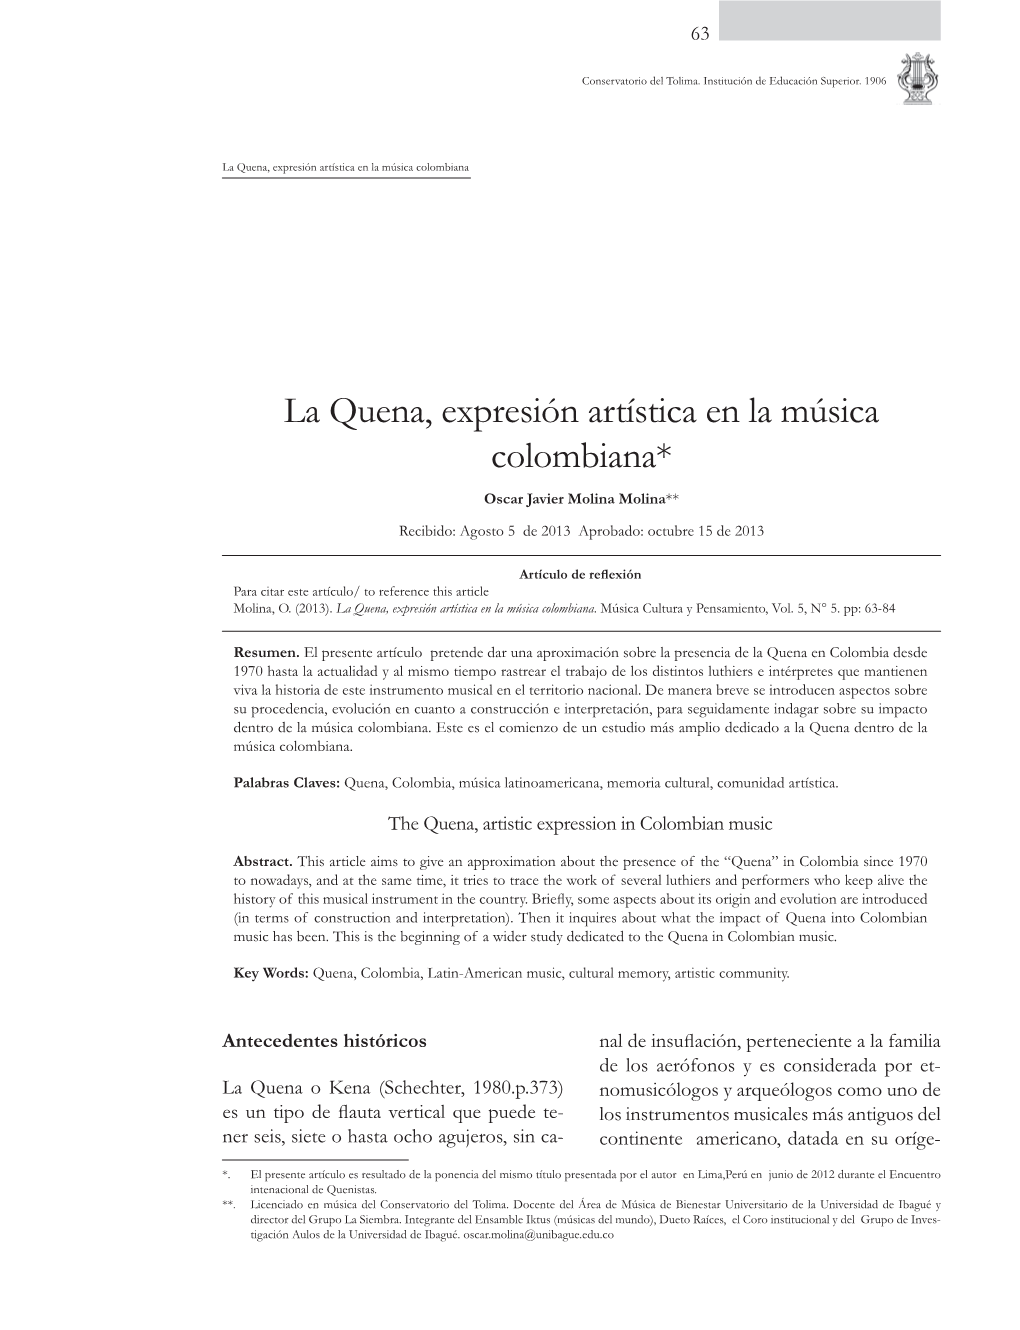 La Quena, Expresión Artística En La Música Colombiana* Oscar Javier Molina Molina** Recibido: Agosto 5 De 2013 Aprobado: Octubre 15 De 2013